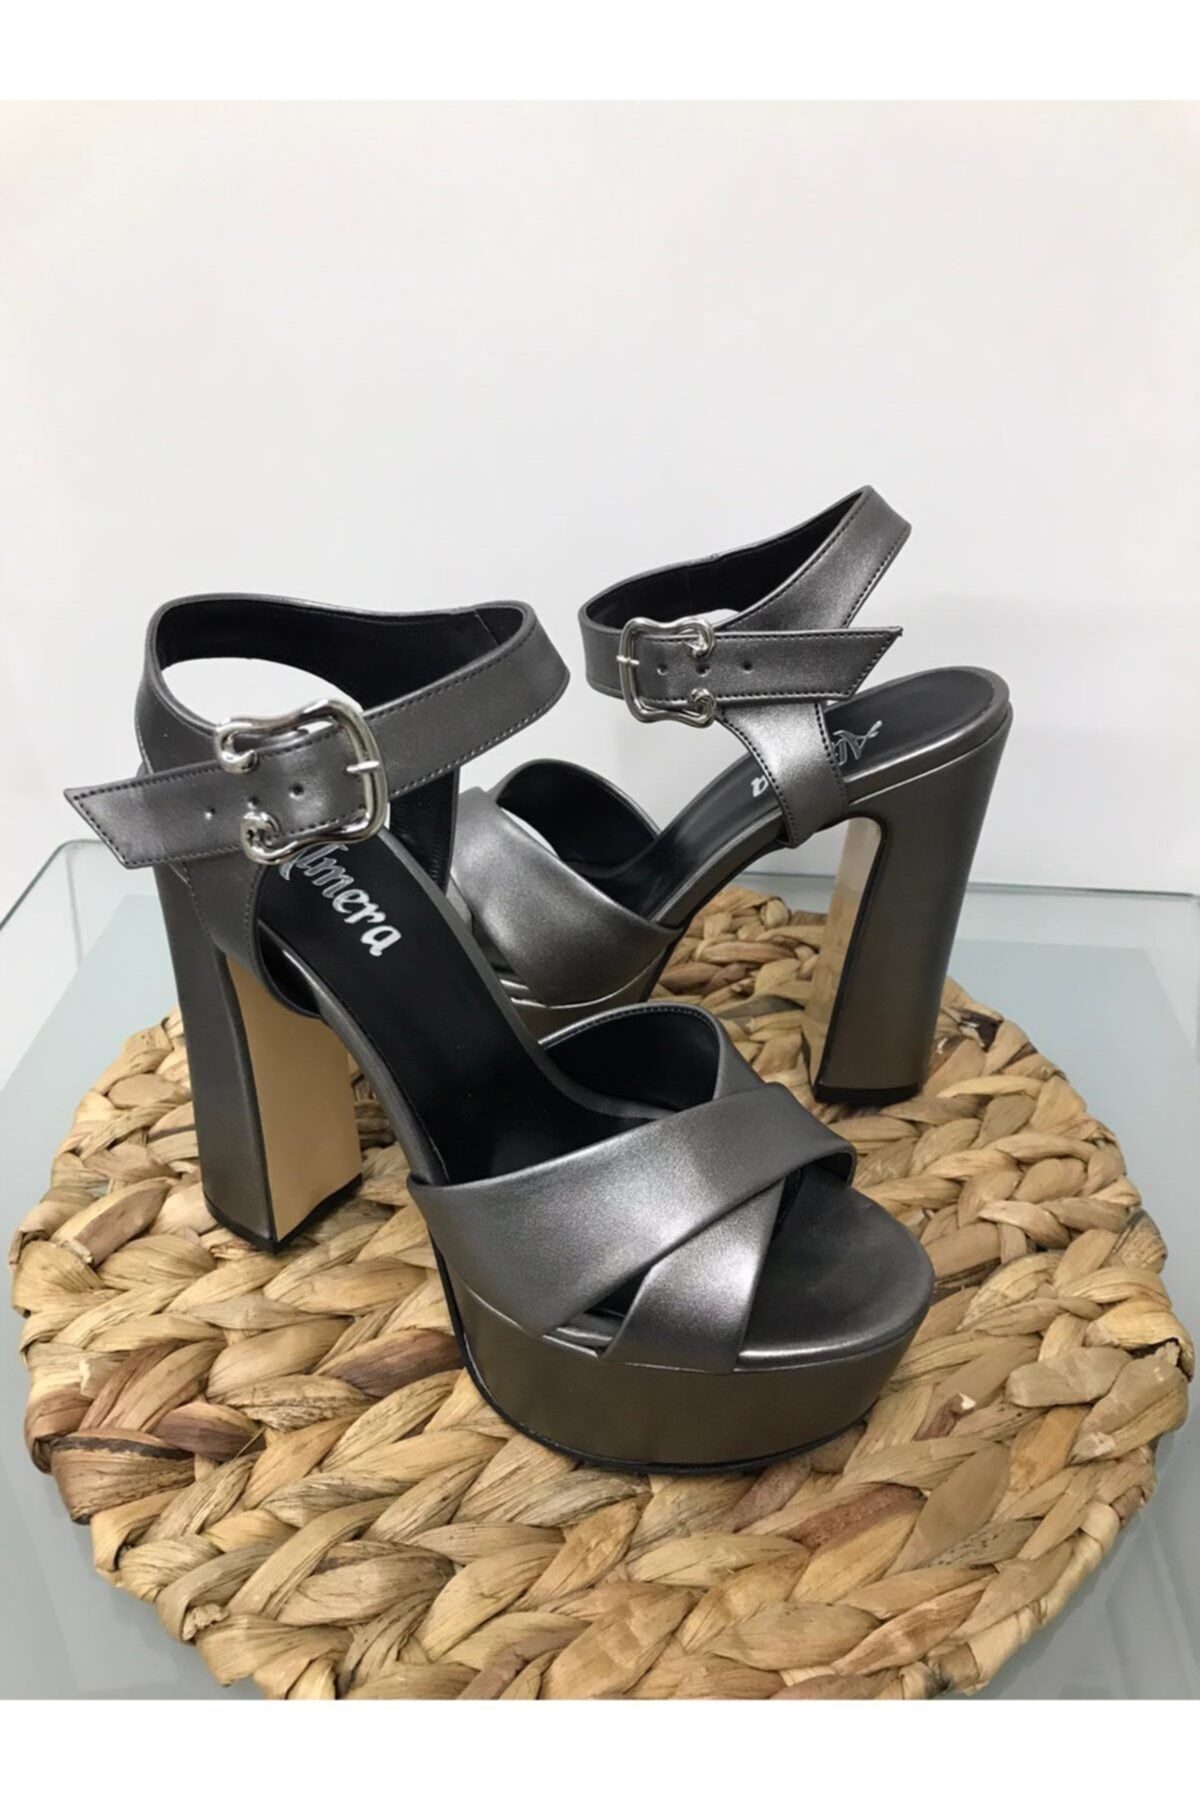 Almera's Shoes Kadın Platin Platform Abiye Ayakkabı B0571